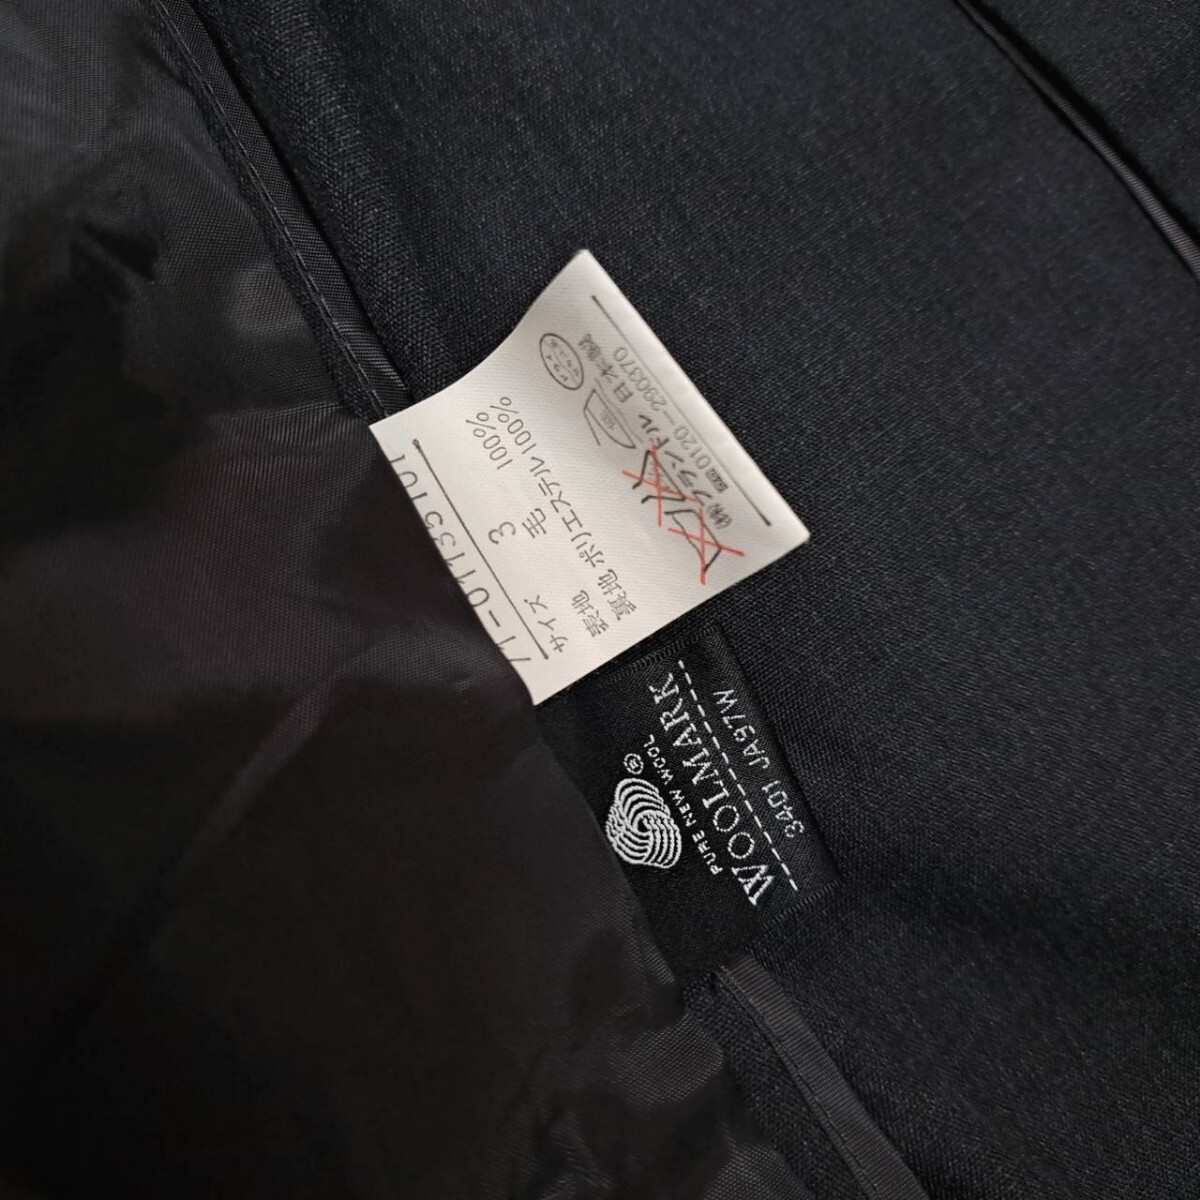 日本製 INED イネド スカートスーツ スーツセット スーツ上下 サイズ3 フォーマル ビジネス レディース【Y054】_画像6